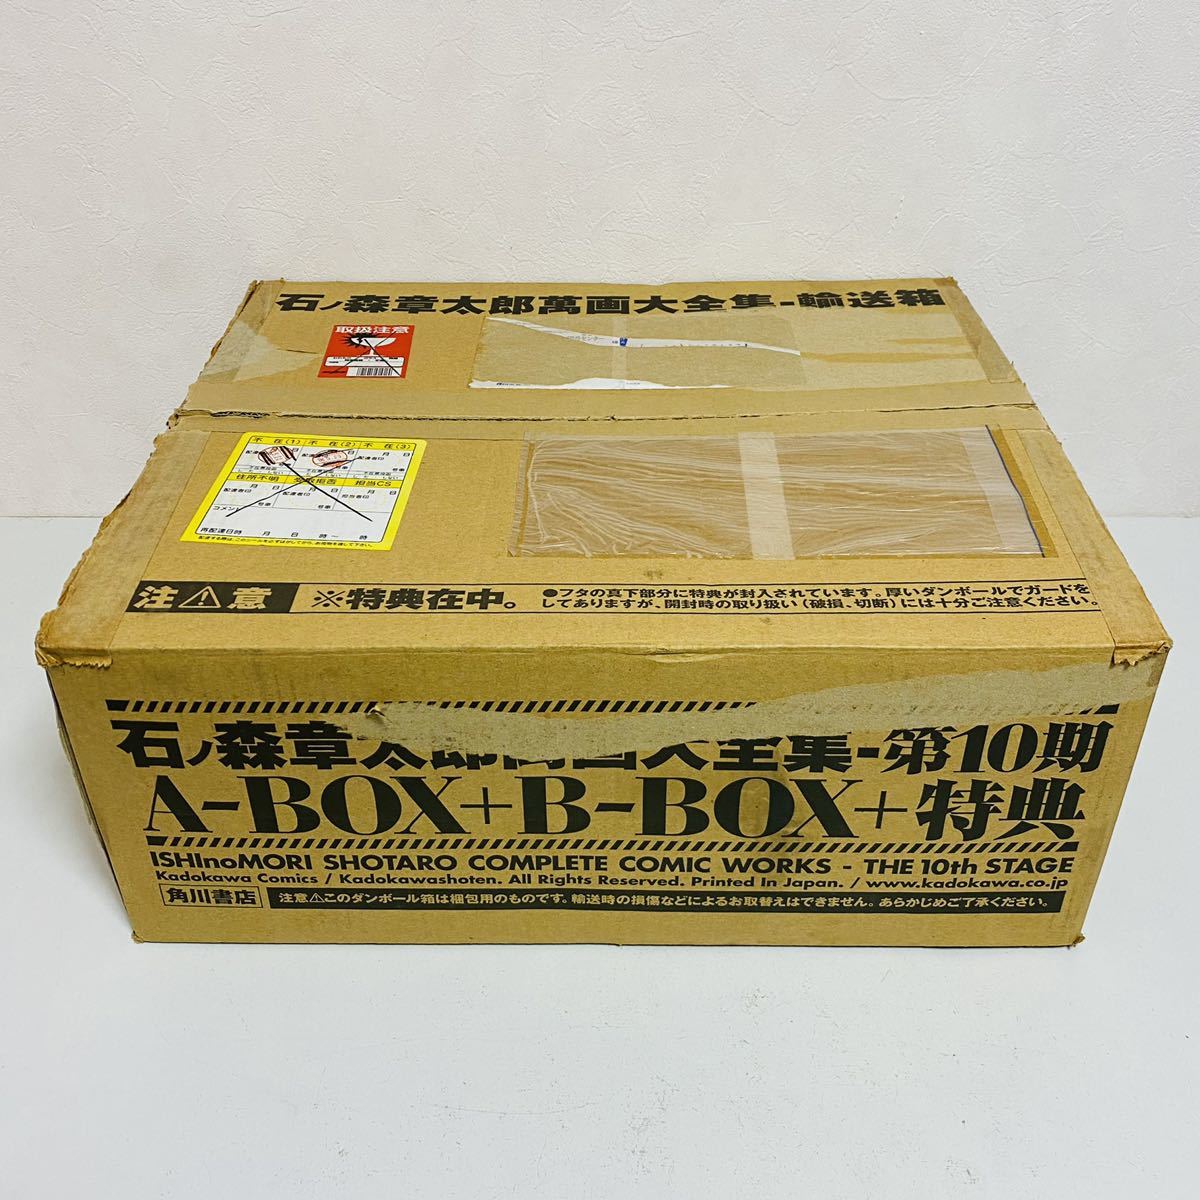 祝日 石ノ森章太郎萬画大全集 5期 A-BOX B-BOX drenriquejmariani.com